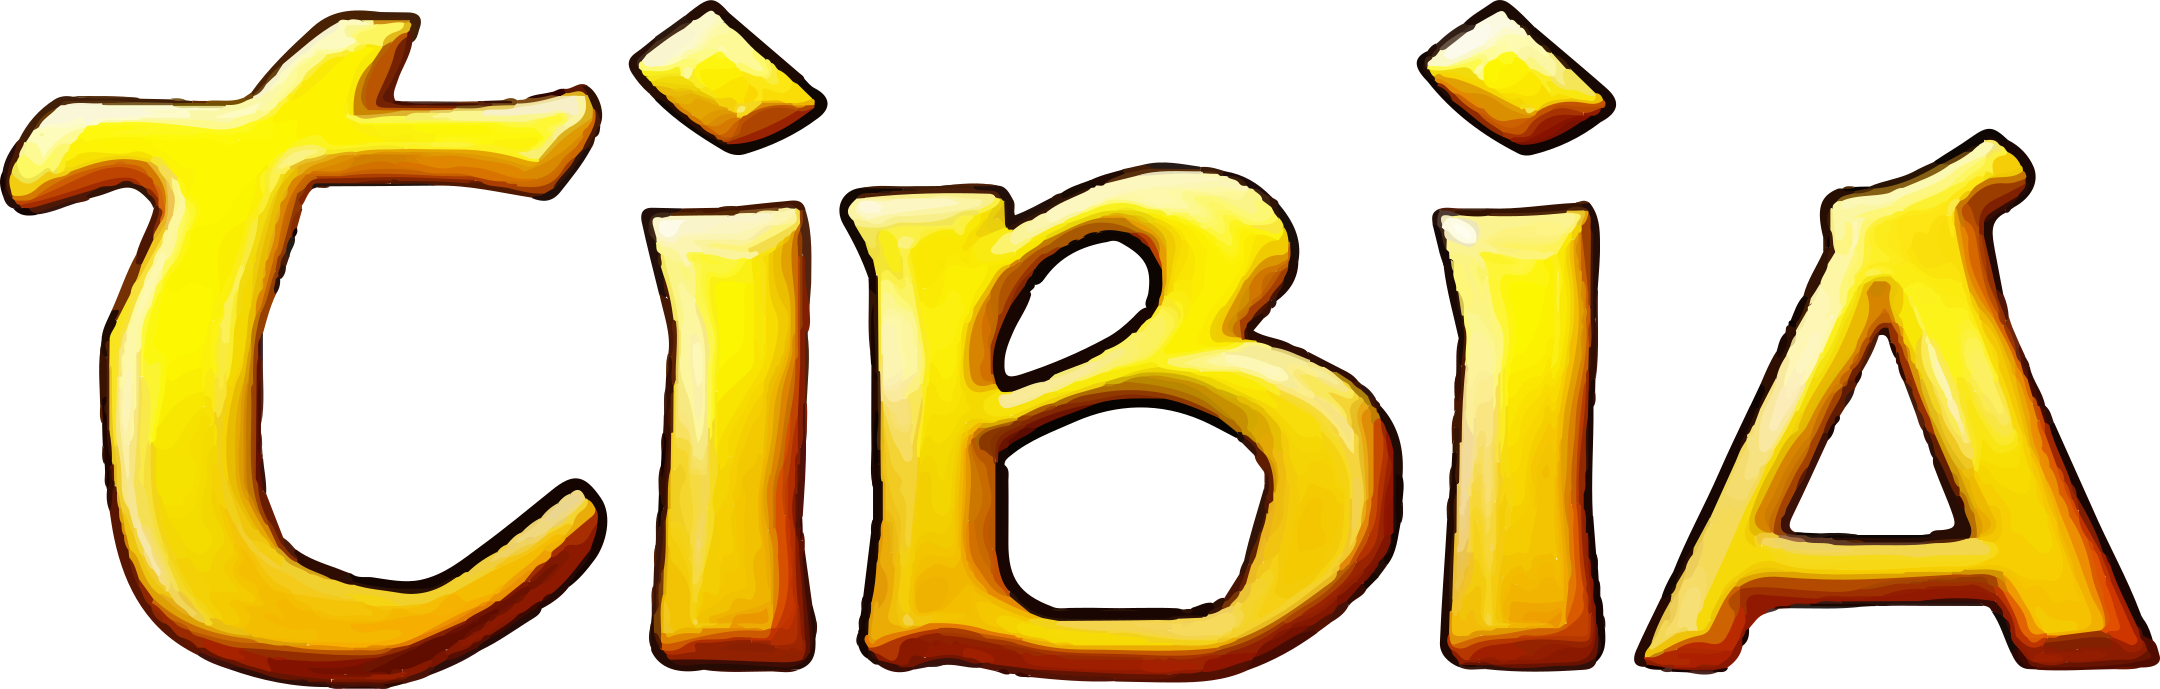 tibia logo 1 - Tibia Logo